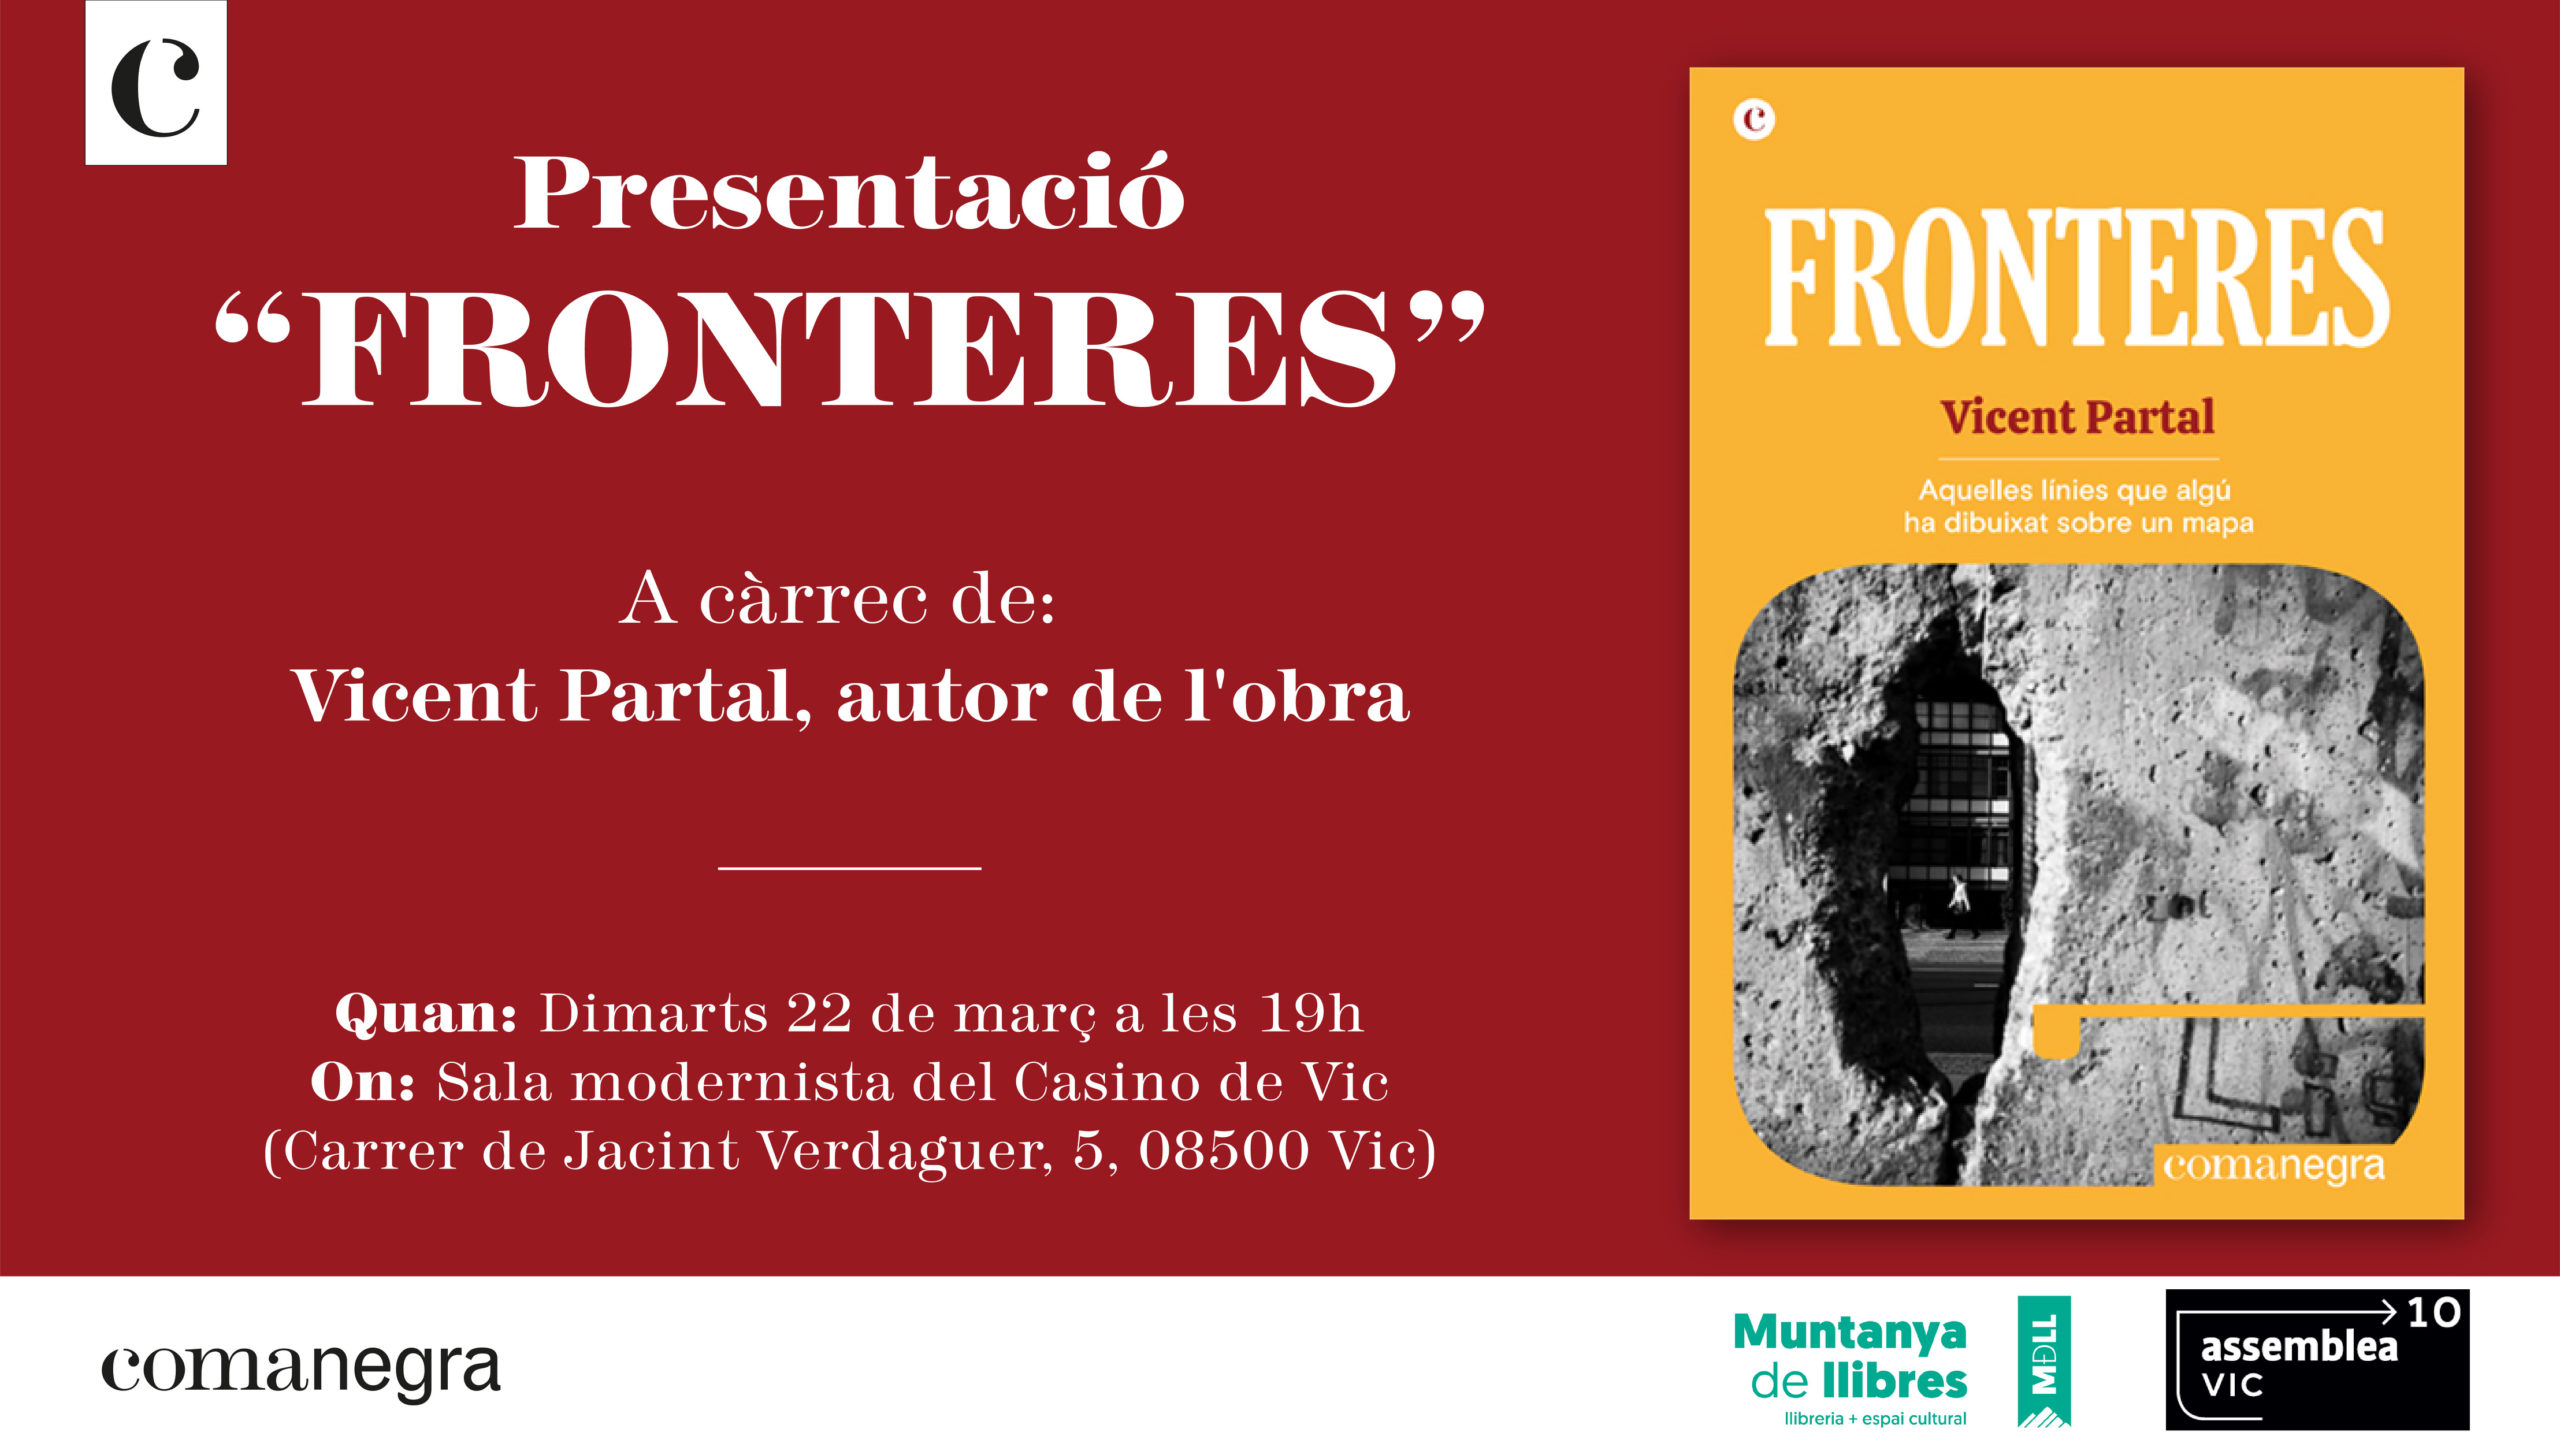 Presentació del llibre "FRONTERES" de Vicent Partal